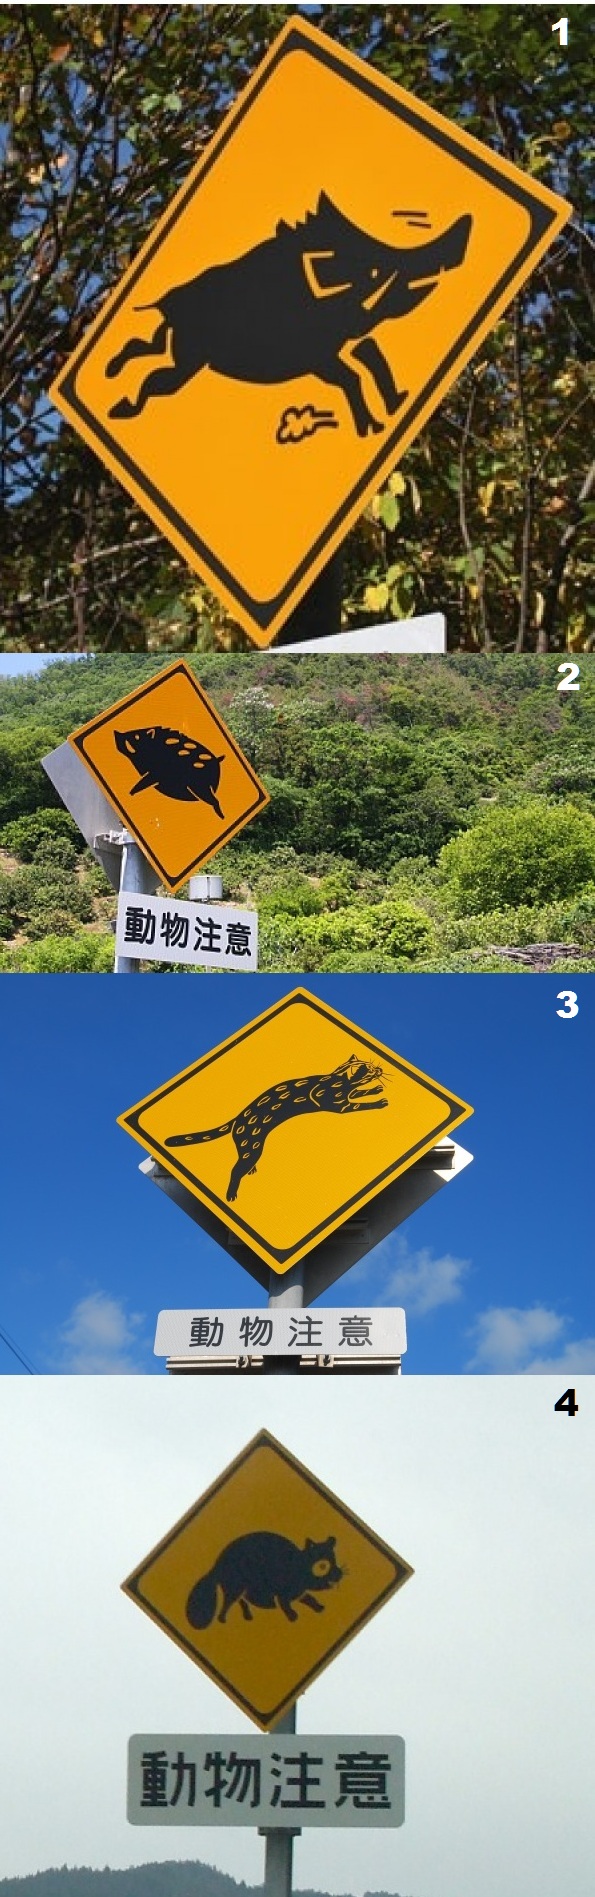 N-animal-crossing-japanese-warnings